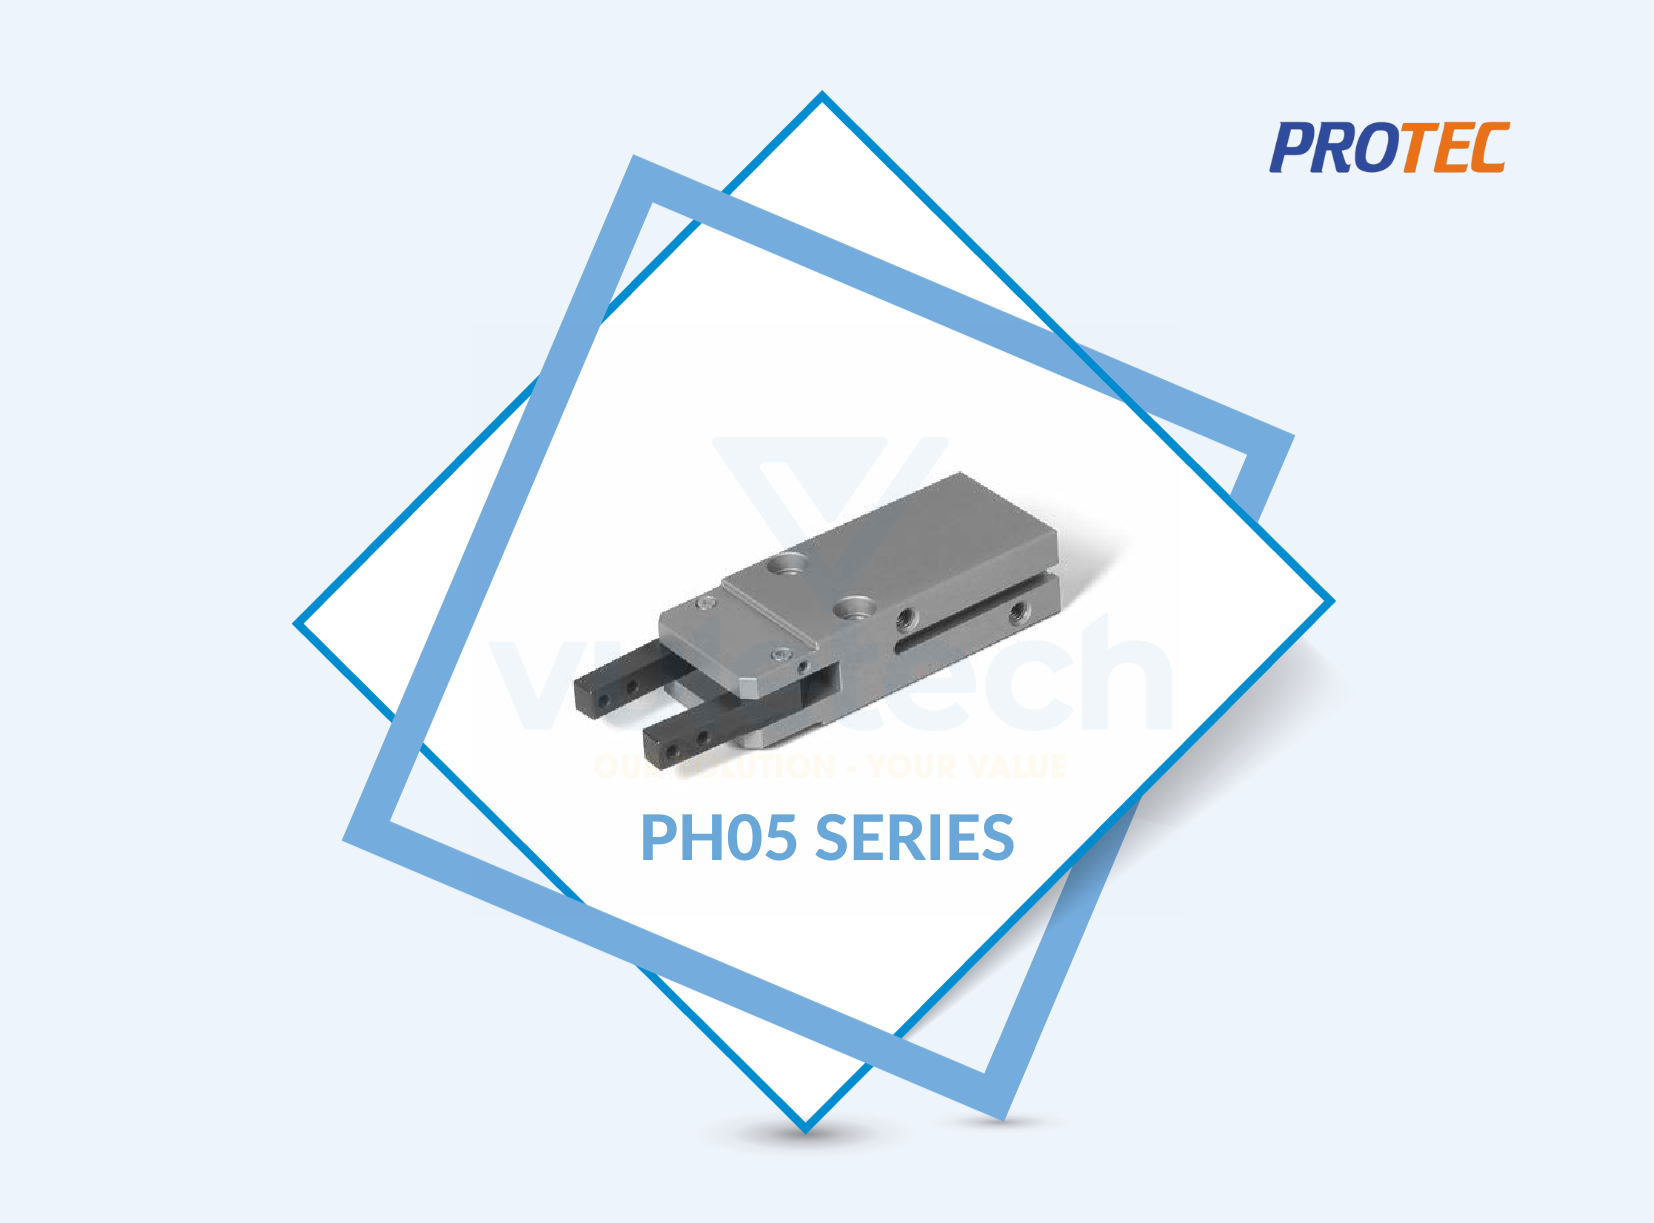 PH05 Series Protec